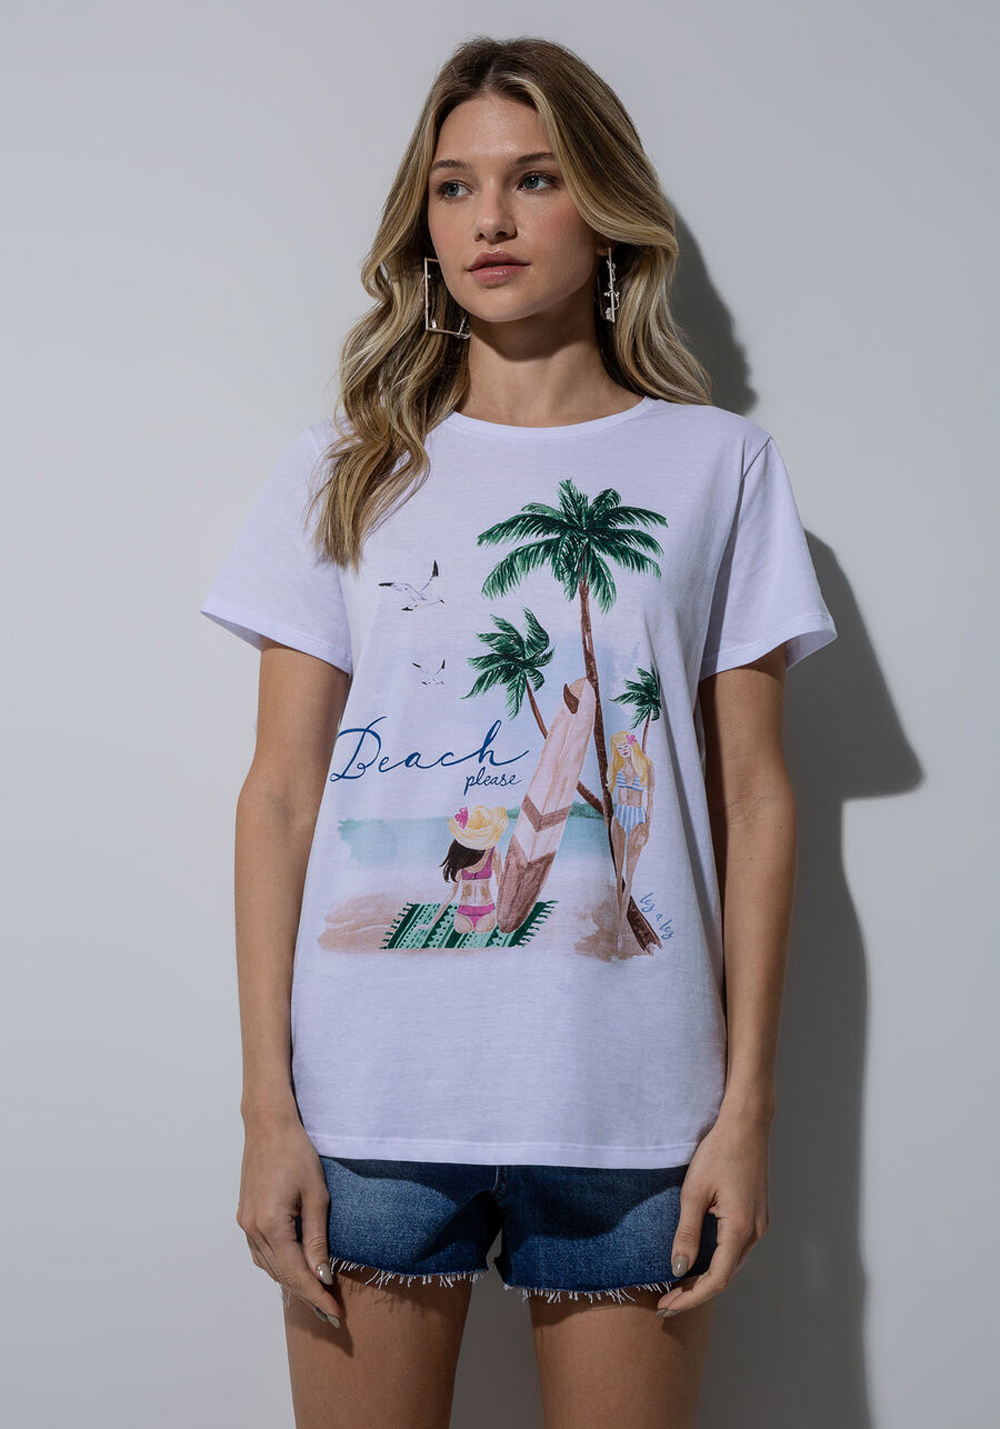 T-Shirt Play Beach Please